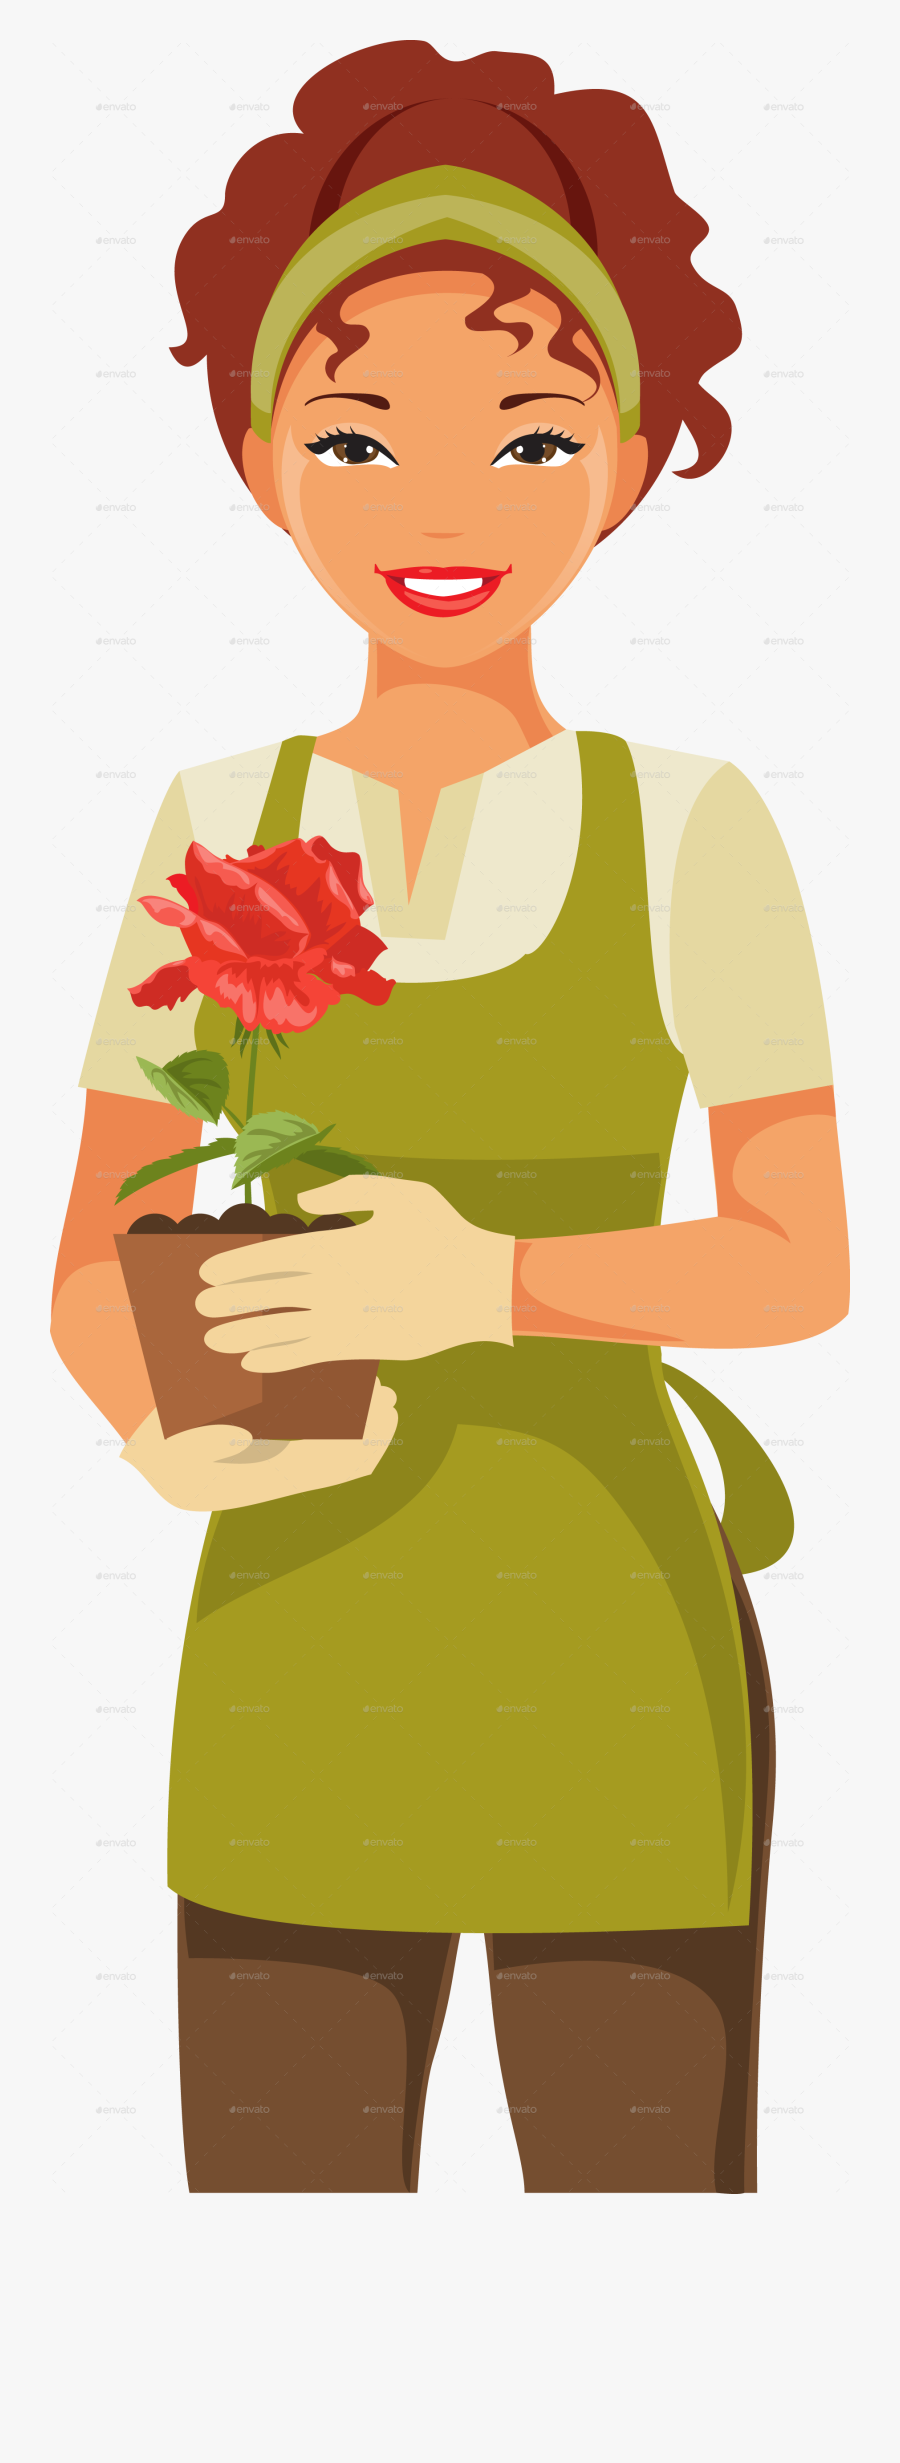 Clipart Woman Gardener - Woman Gardening Clipart, Transparent Clipart